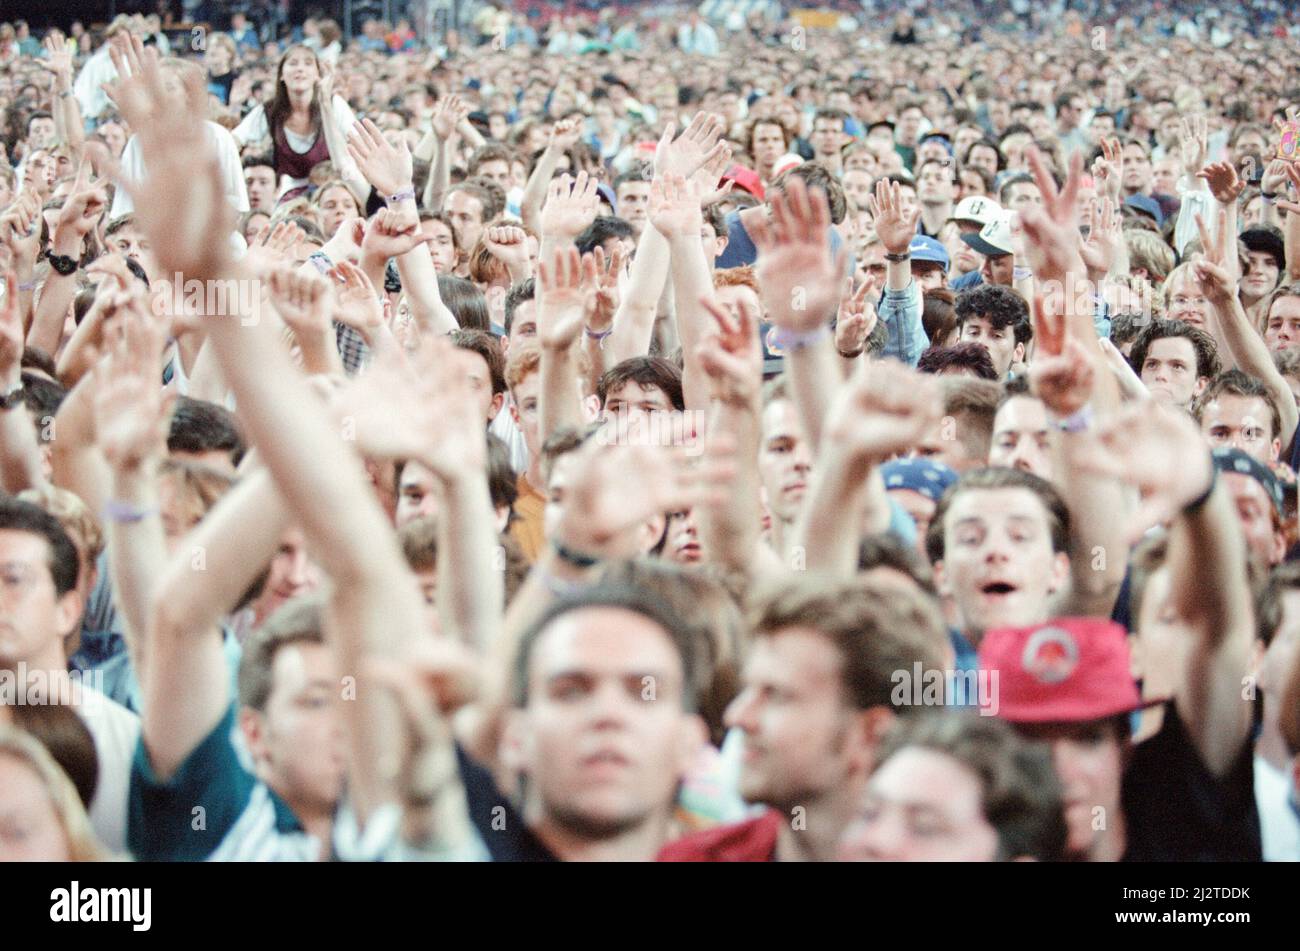 Concert U2, visite du zoo TV, Cardiff Arms Park, Cardiff, pays de Galles, Mercredi 18th août 1993. Notre image montre ... scènes de foule. Banque D'Images